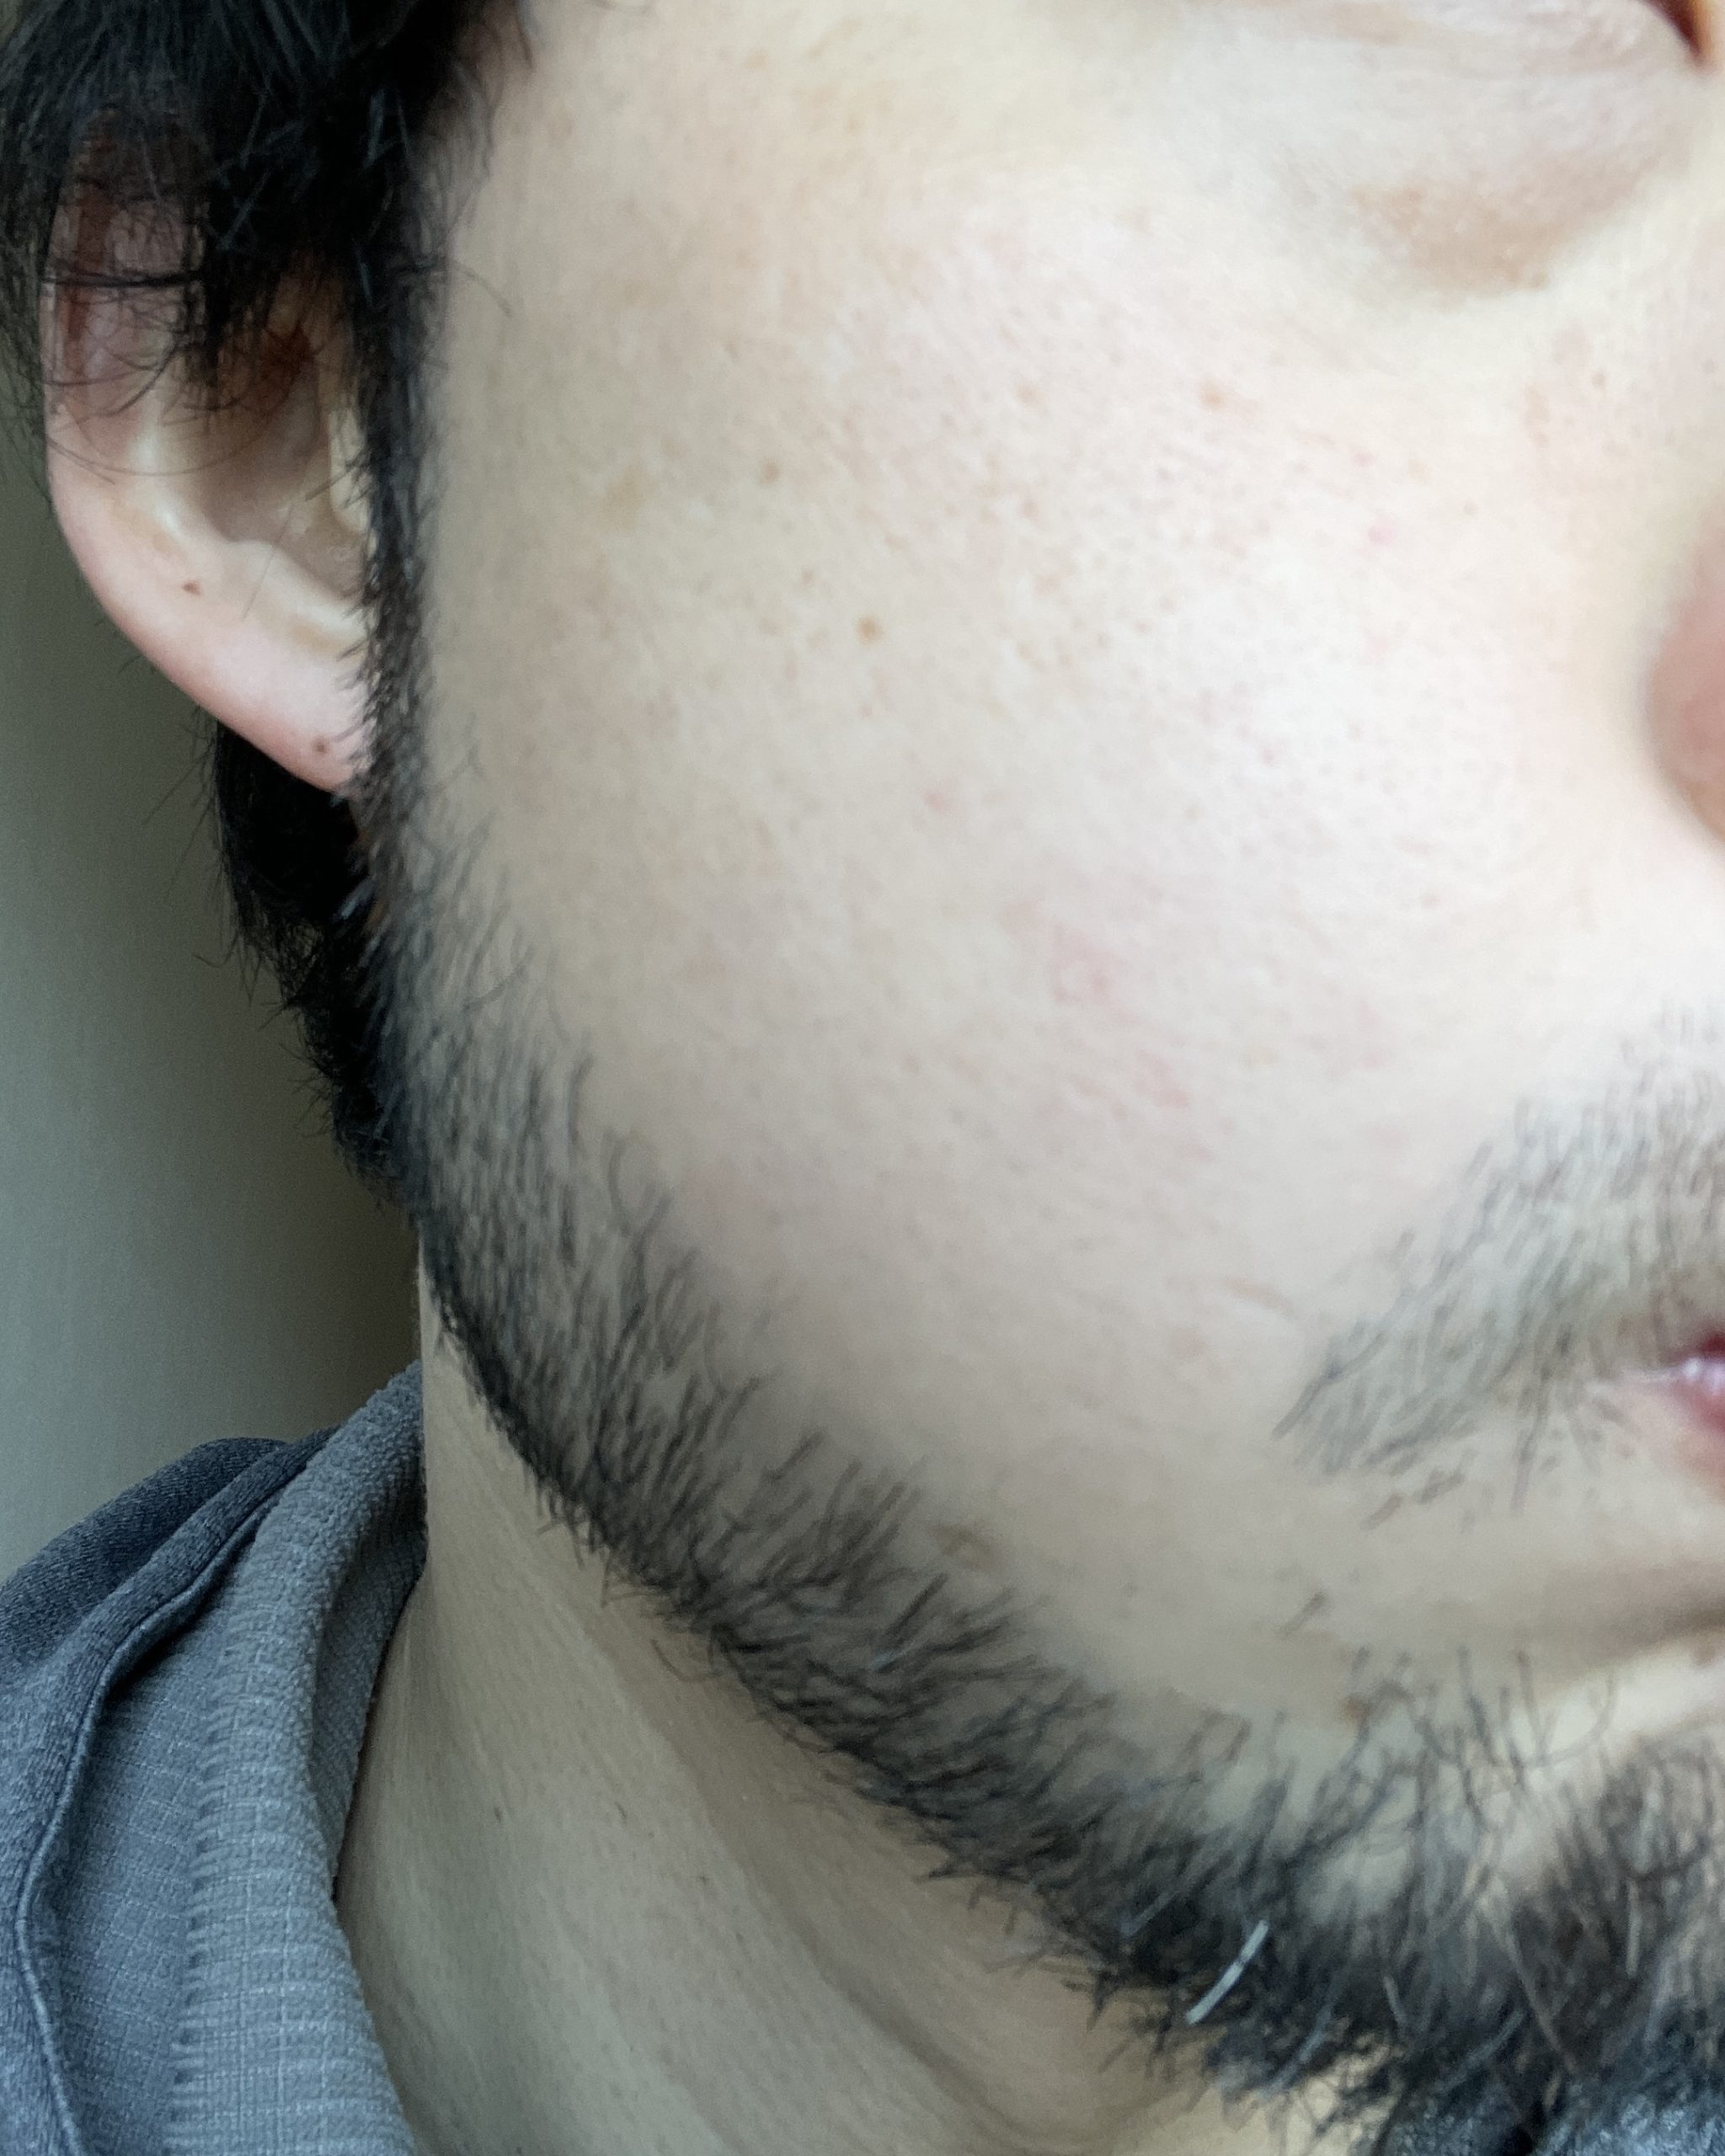 髭脱毛 始めて一年後の状態 福岡市博多区の男性専門美容室 Men S Hair Aratana